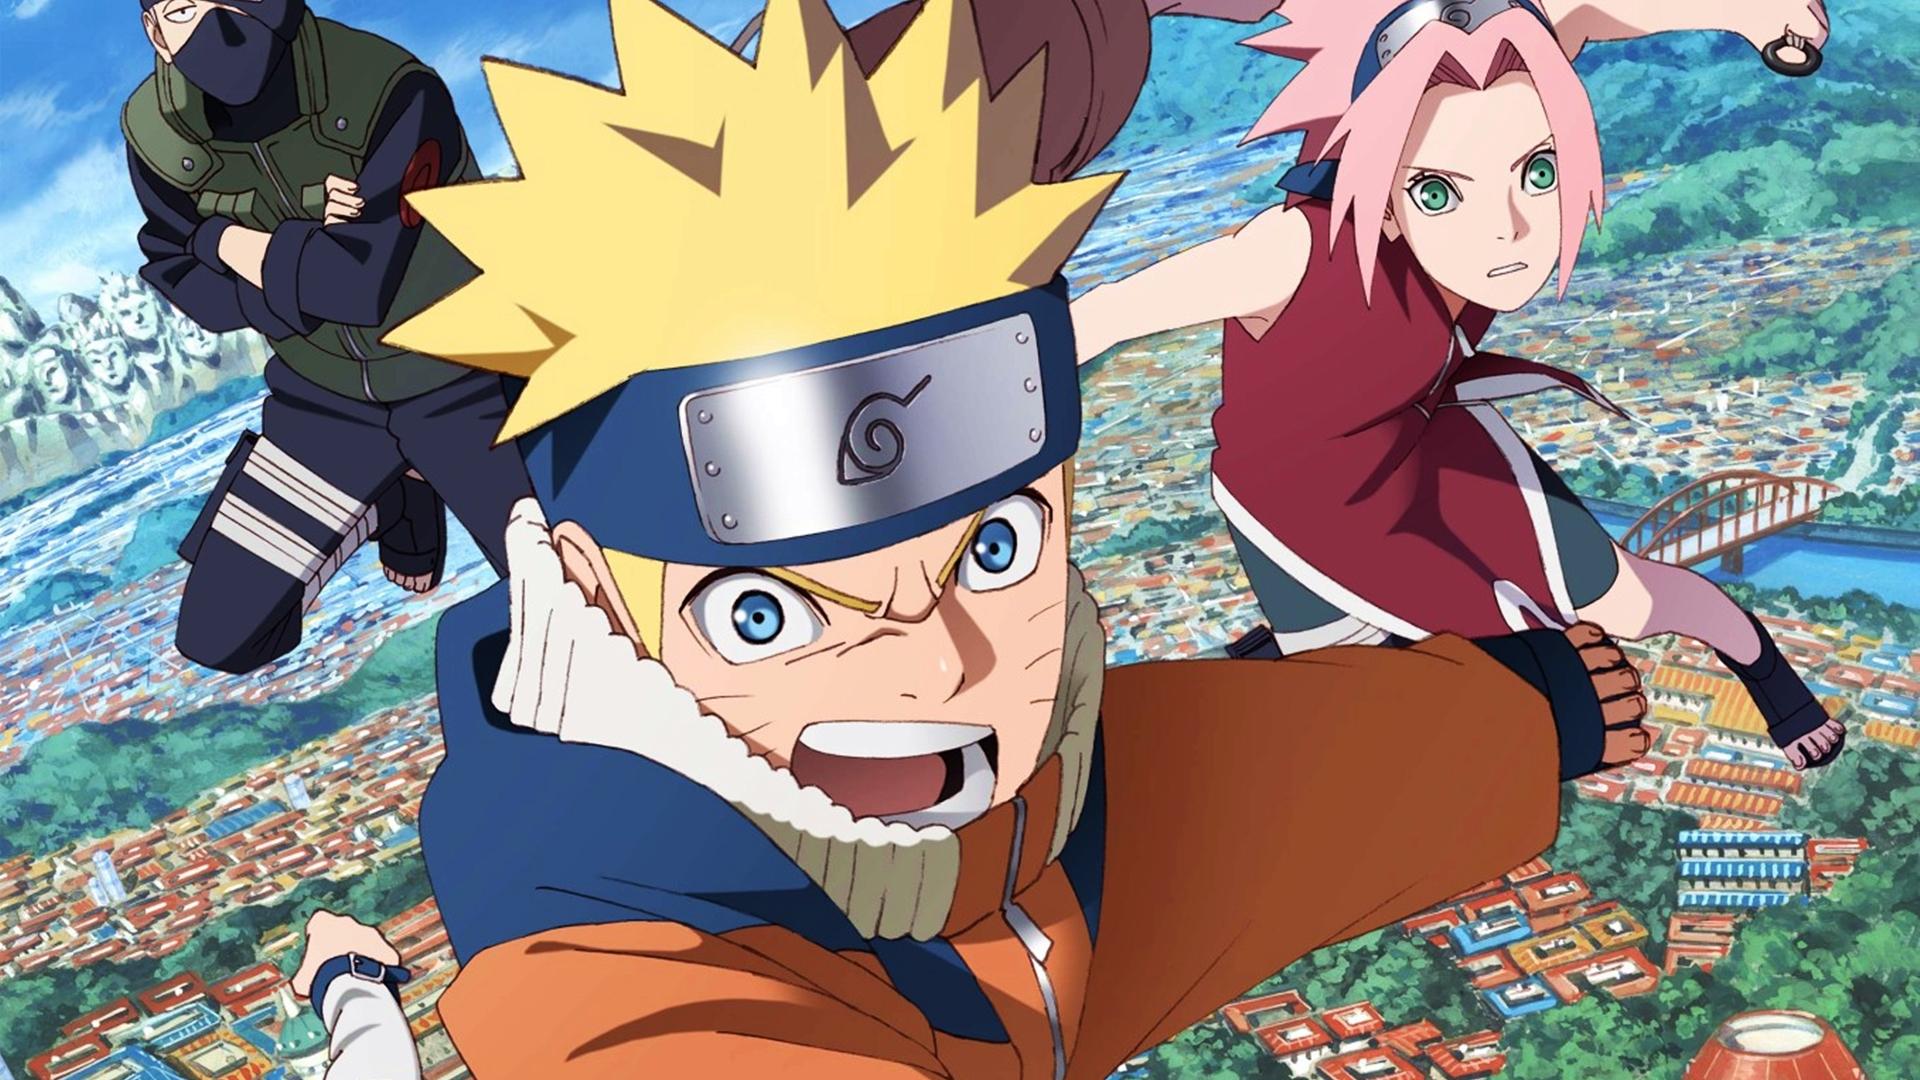 Naruto: todos los Hokage de la aldea de la hoja del peor al mejor